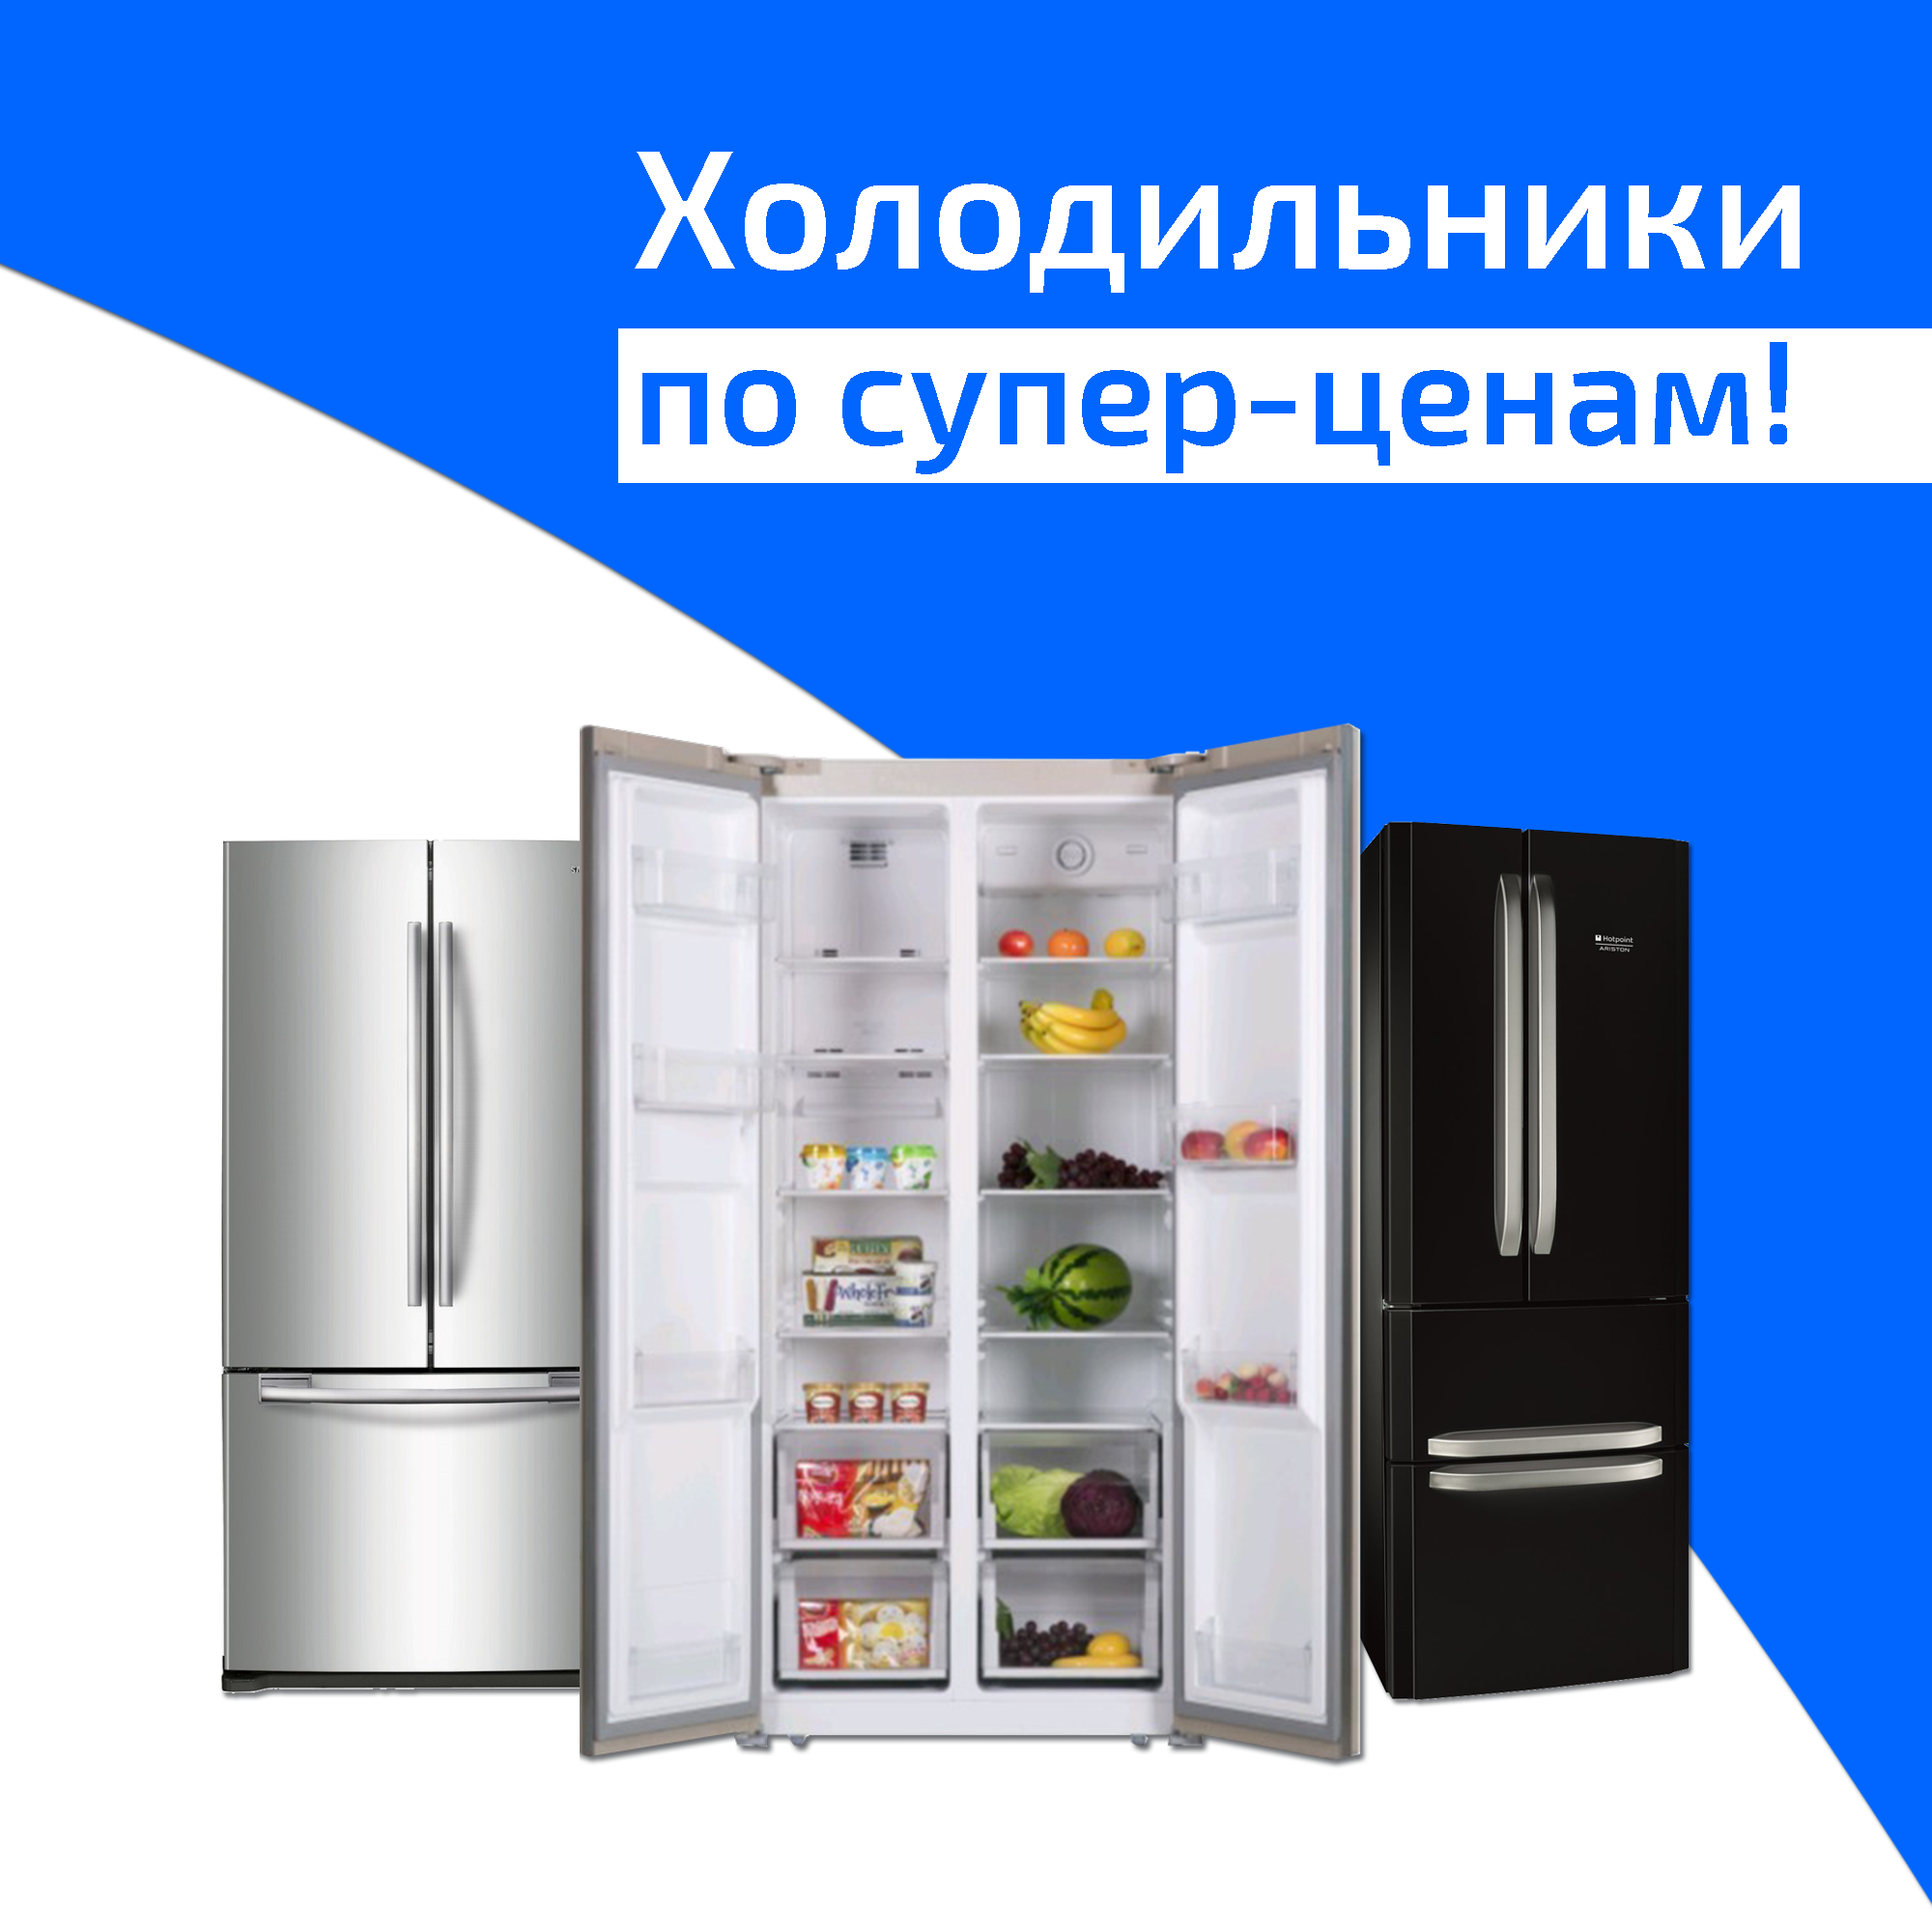 Холодильники за супер-цінами від Aleco